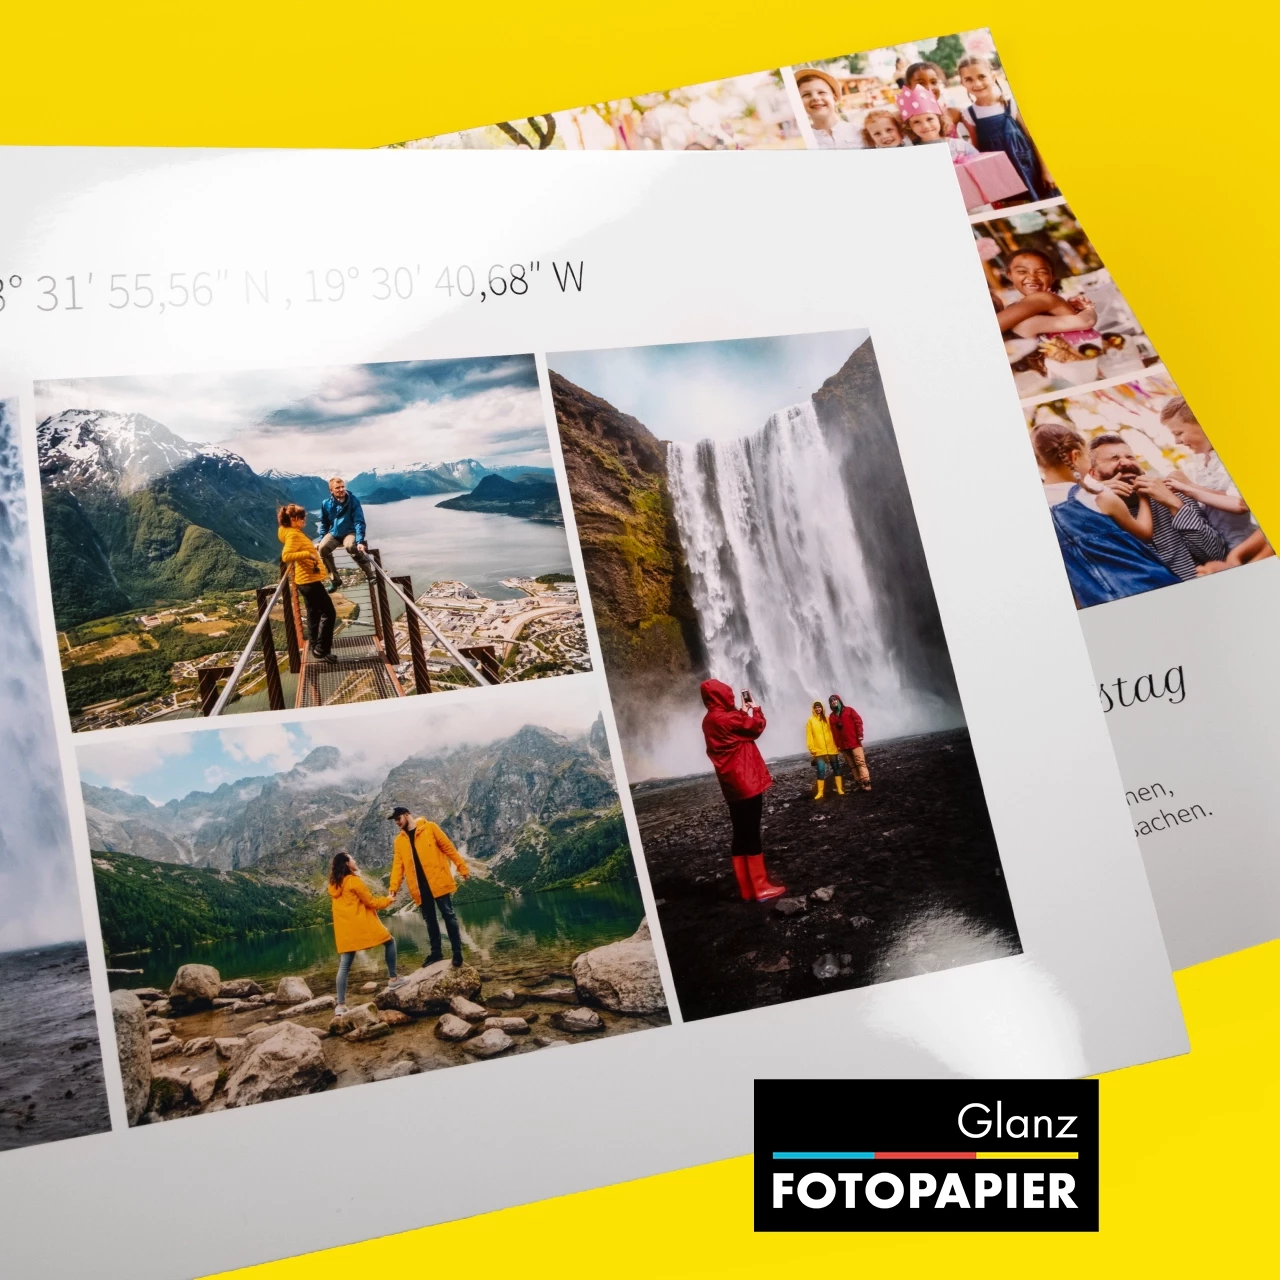 Zwei aufeinander versetzt liegende Poster, die zeigen, wie hochwertig deine personifizierte online erstellte Collage auf glänzendem Fotopapier aussieht.